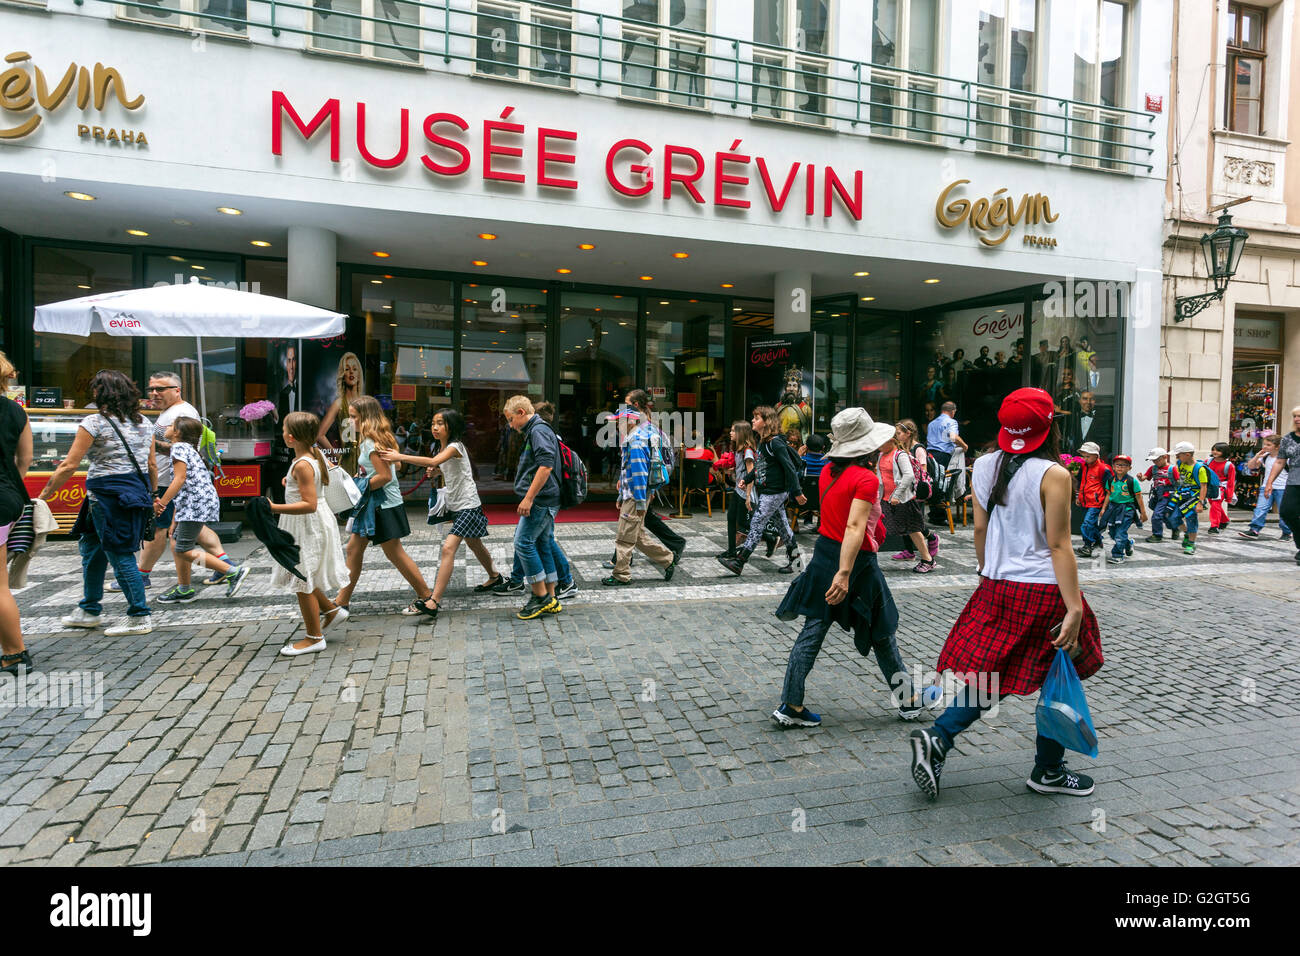 Musee Grevin, Wax Museum, die Massen von Menschen gehen durch Celetna Straße, Altstadt, Prag, Tschechische Republik Stockfoto